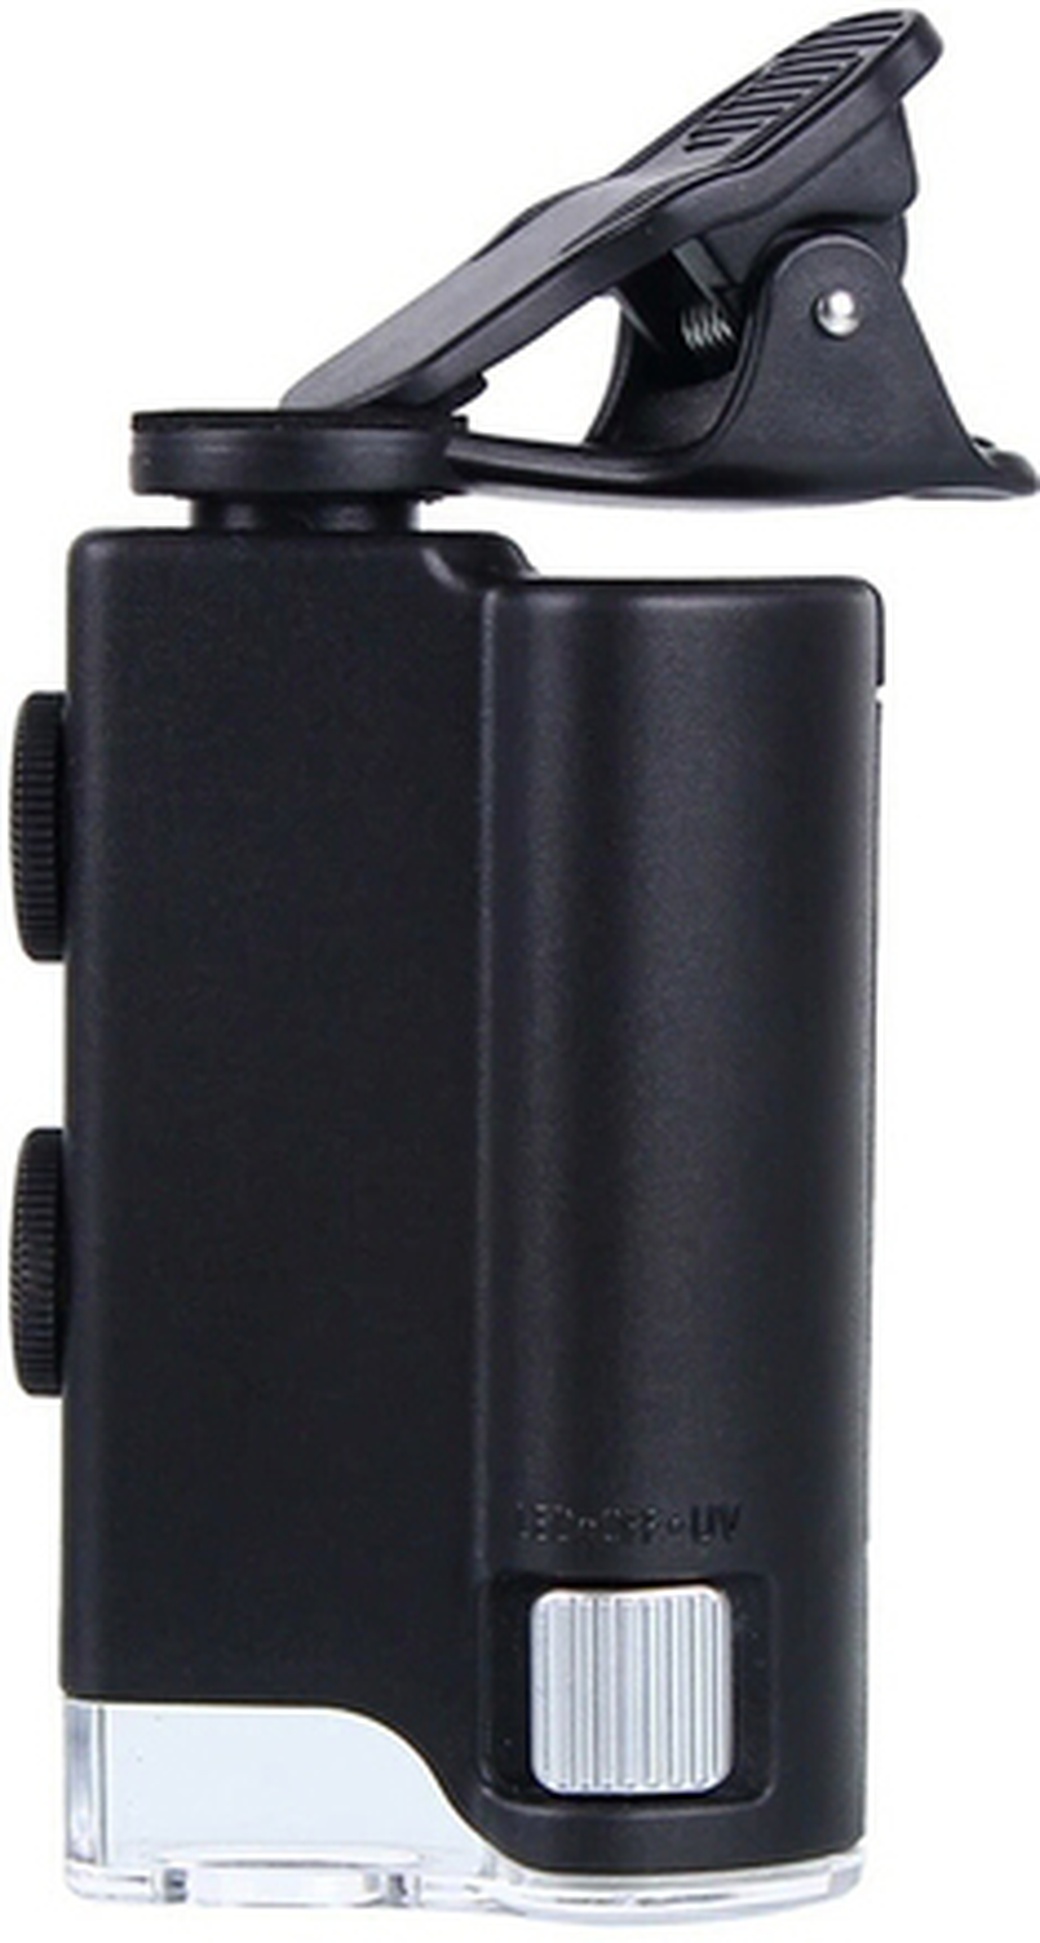 Микроскоп карманный Kromatech 60-100x мини, с креплением для смартфона, подсветкой (1 LED) и ультраф фото